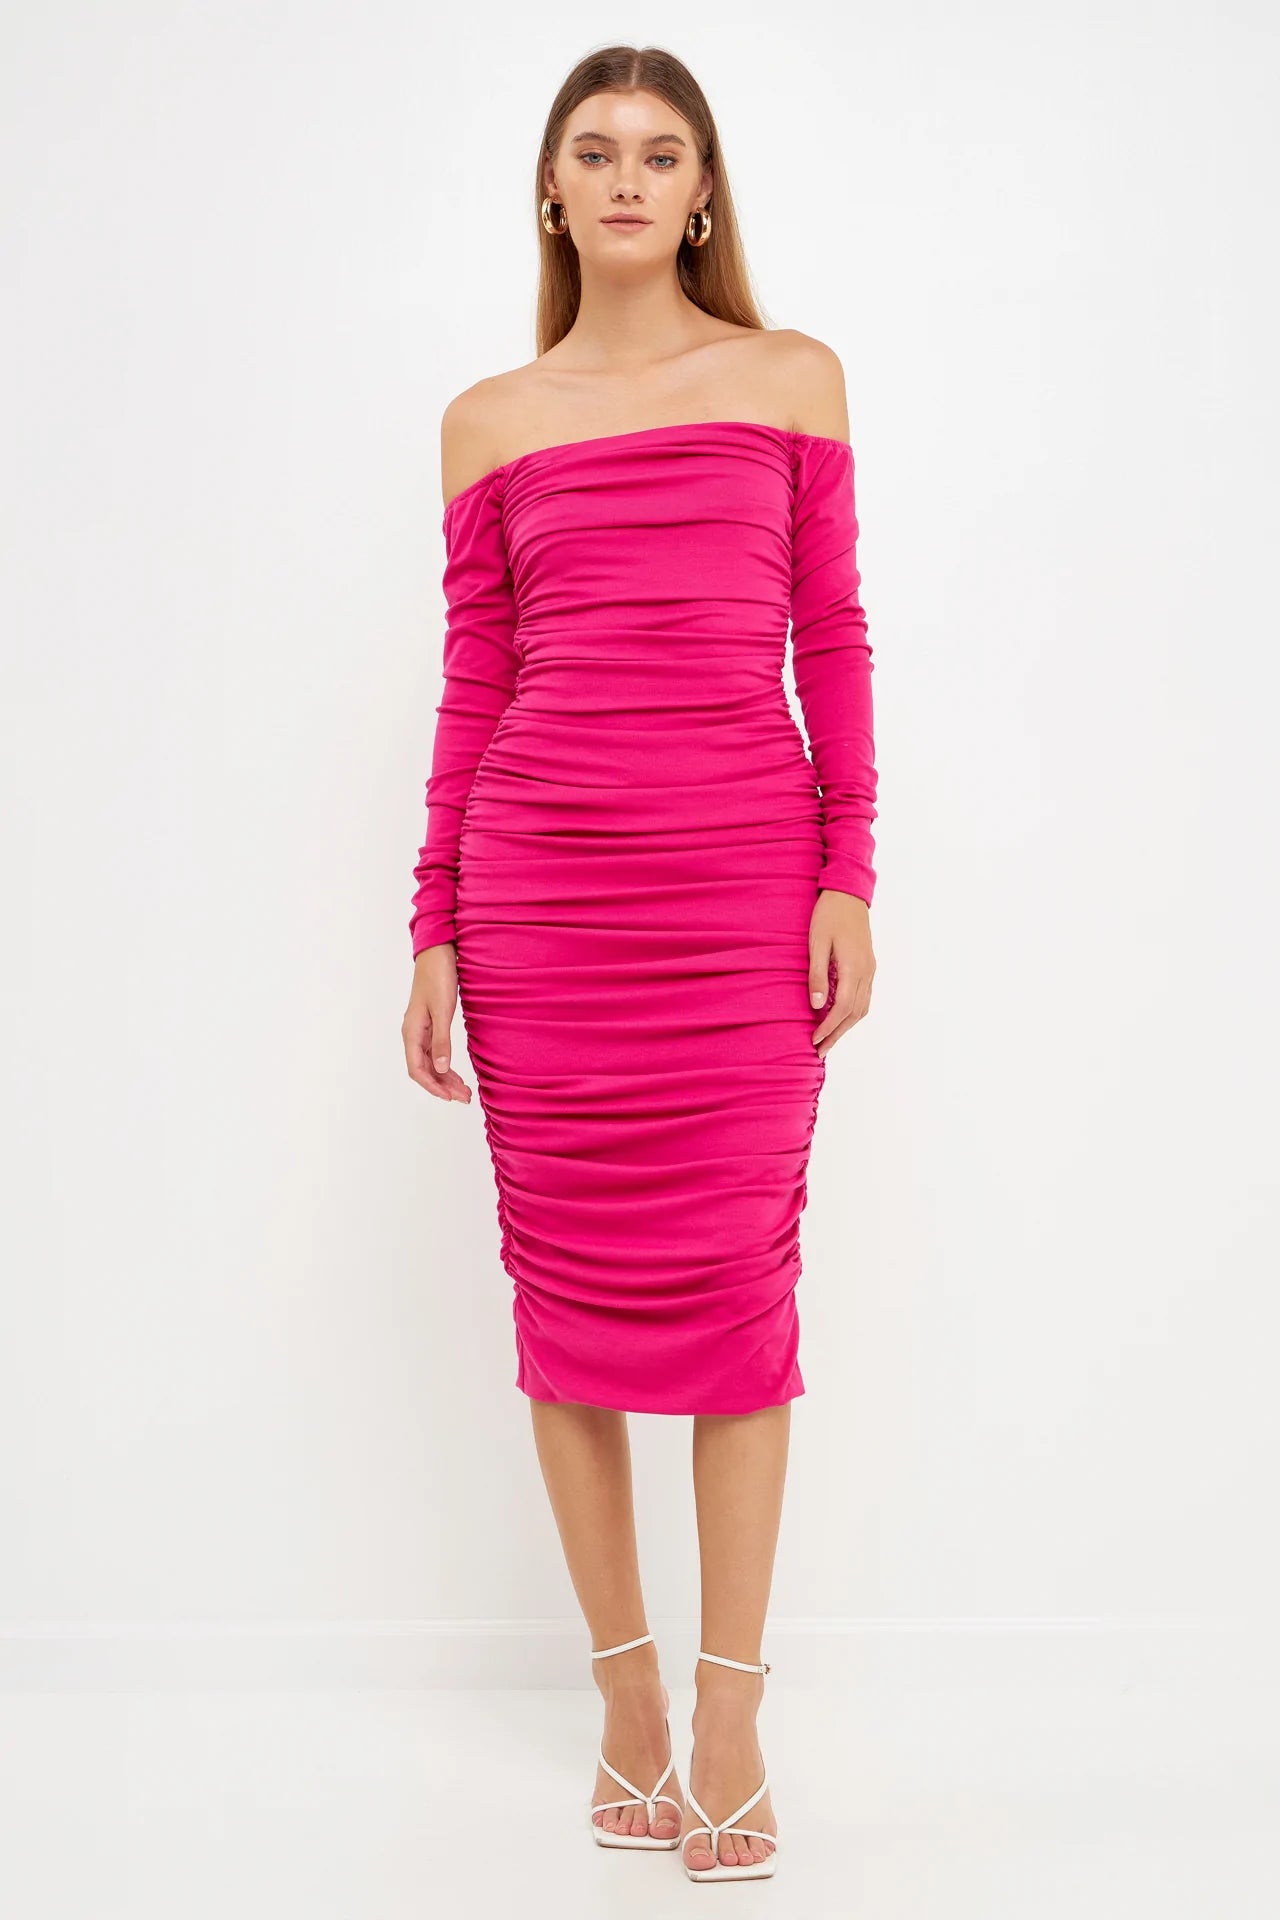 Dresses - Mini, Midi & Page Rose Dresses for Endless Women – Maxi – 7